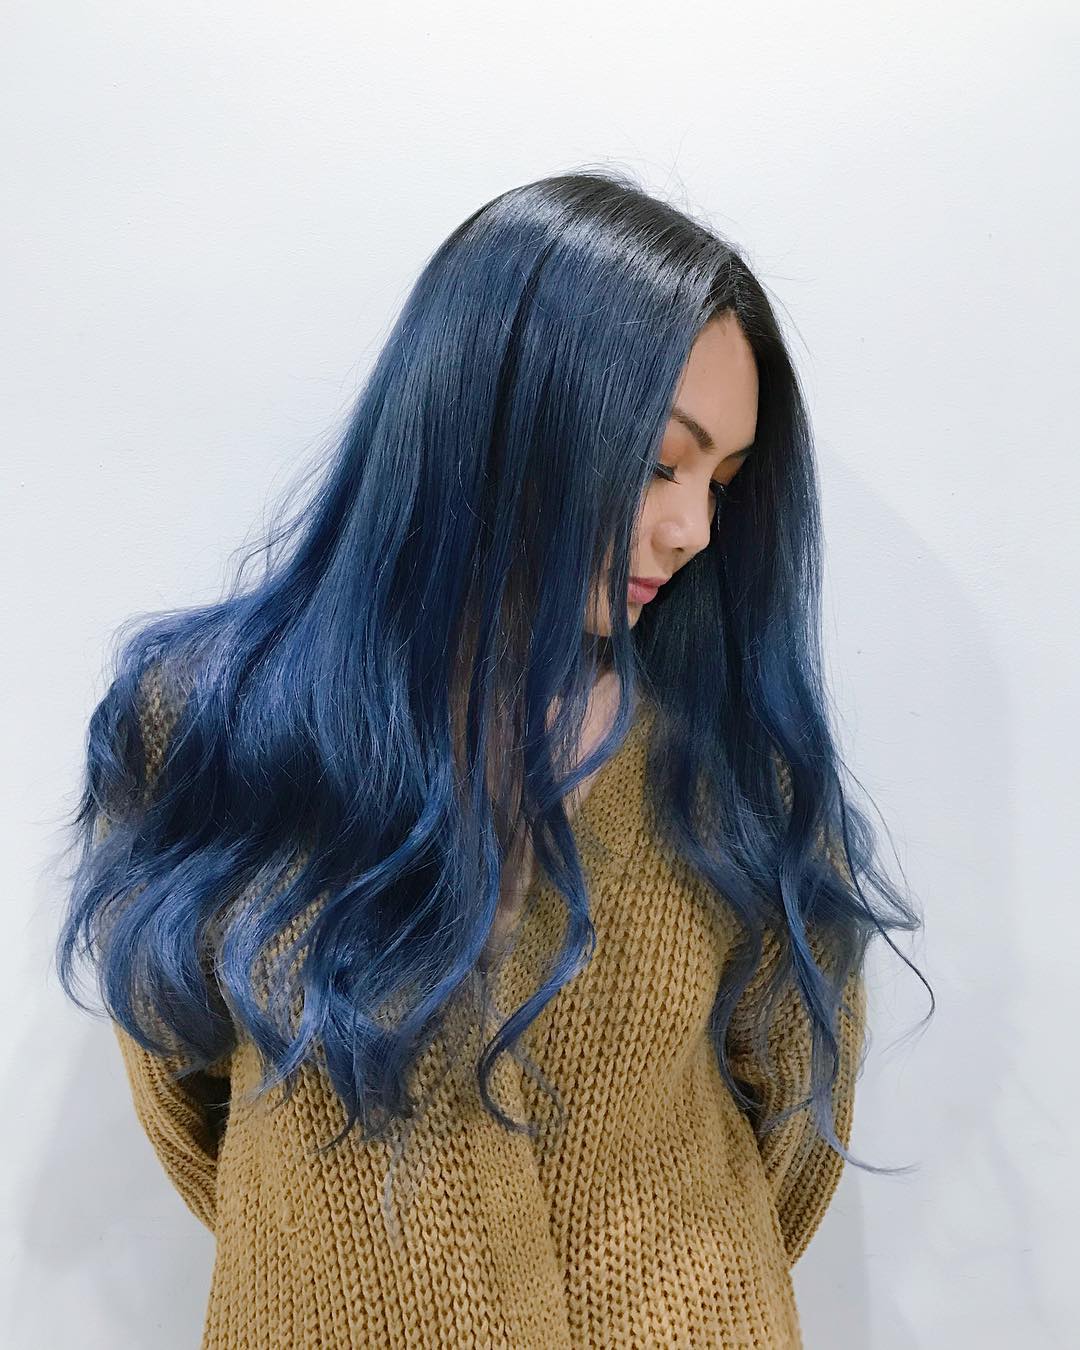 Tóc nhuộm xanh không những thể hiện phong cách của bạn mà còn giúp tăng thêm sự nổi bật. Hãy xem bức ảnh đính kèm để cùng tìm hiểu và lựa chọn cho mình một kiểu tóc ấn tượng.